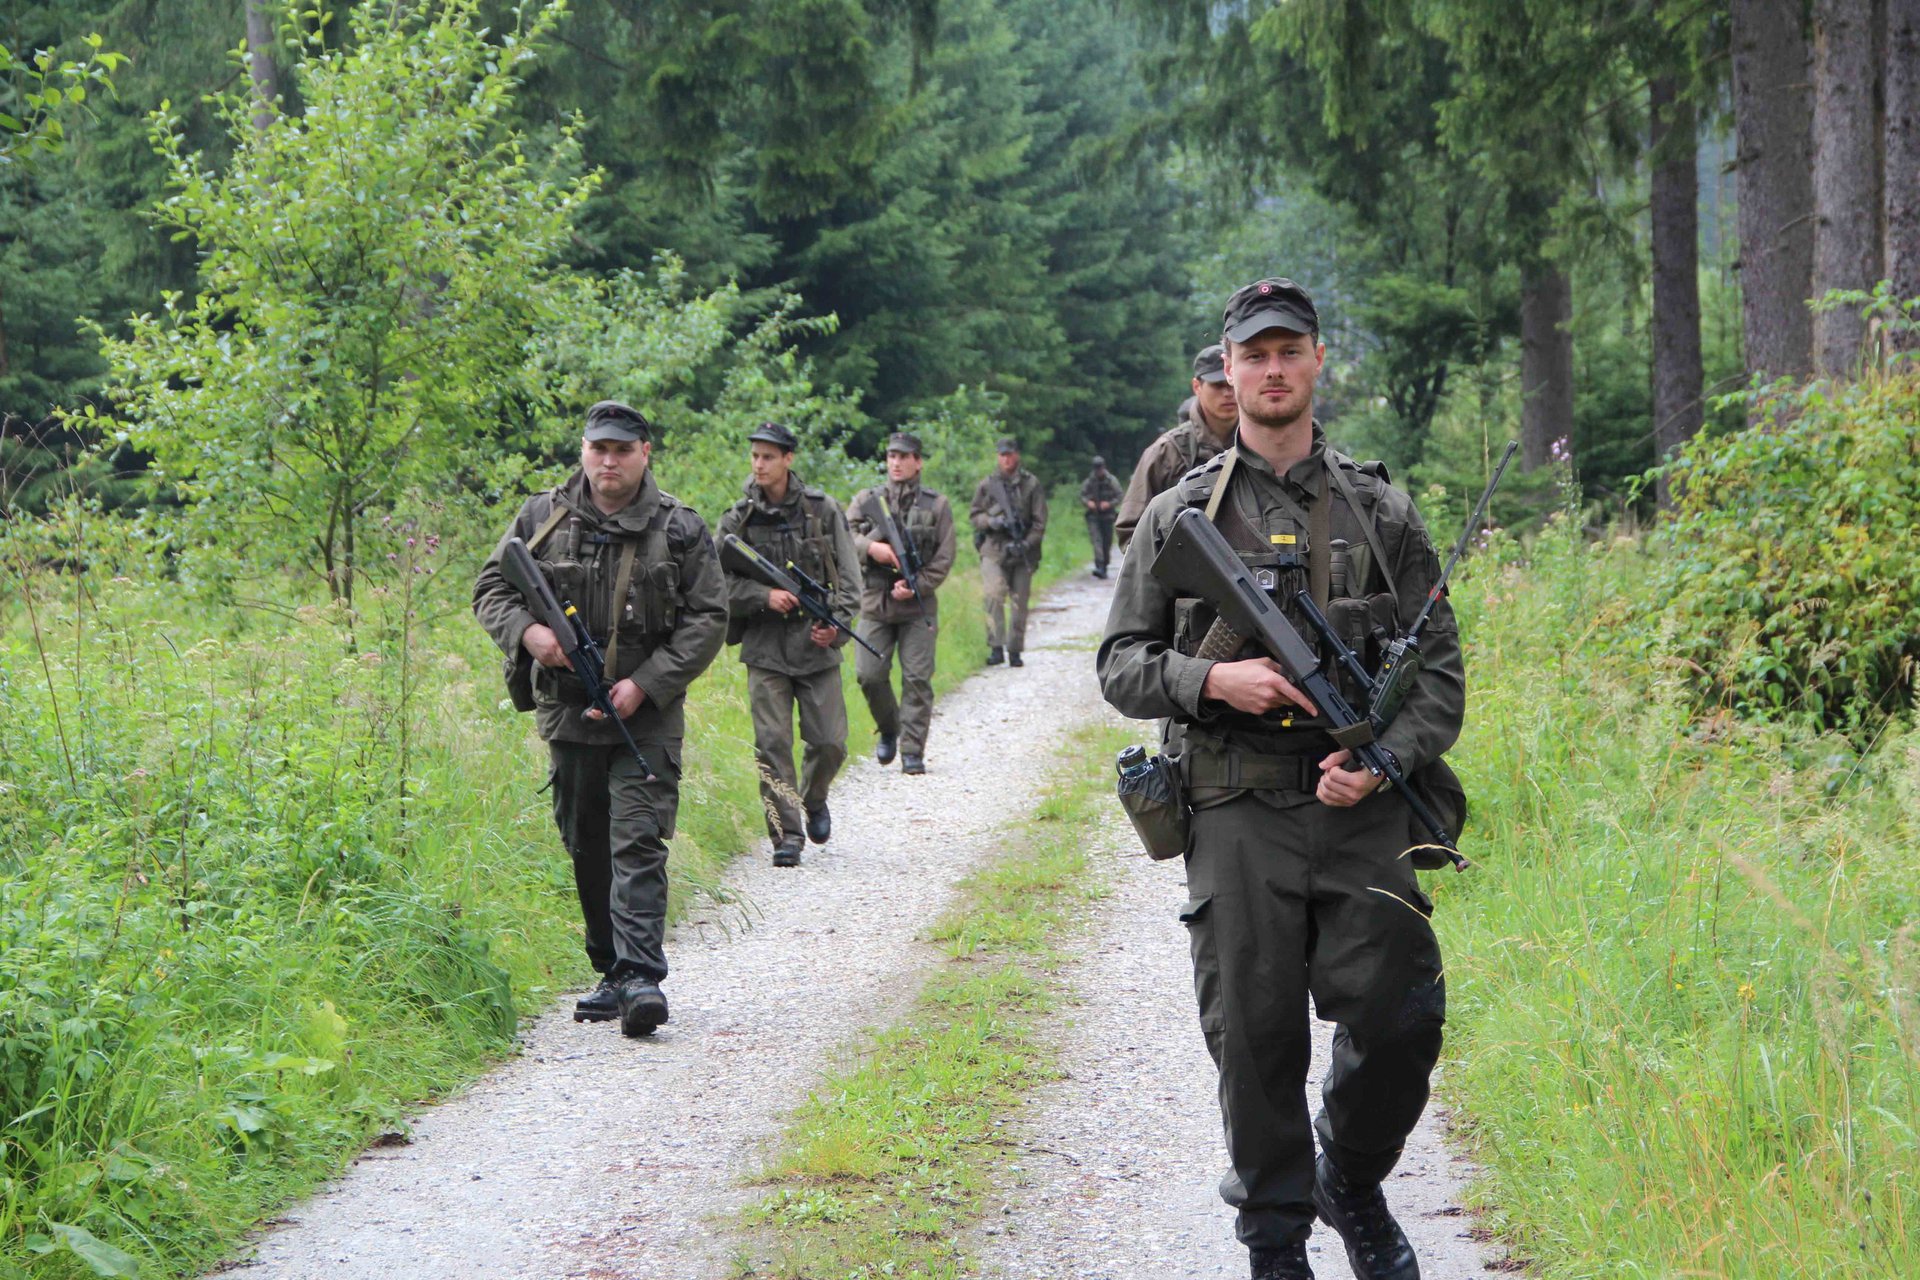 Milizsoldaten des Jägerbataillons Niederösterreich bei einem gesicherten Fußmarsch.